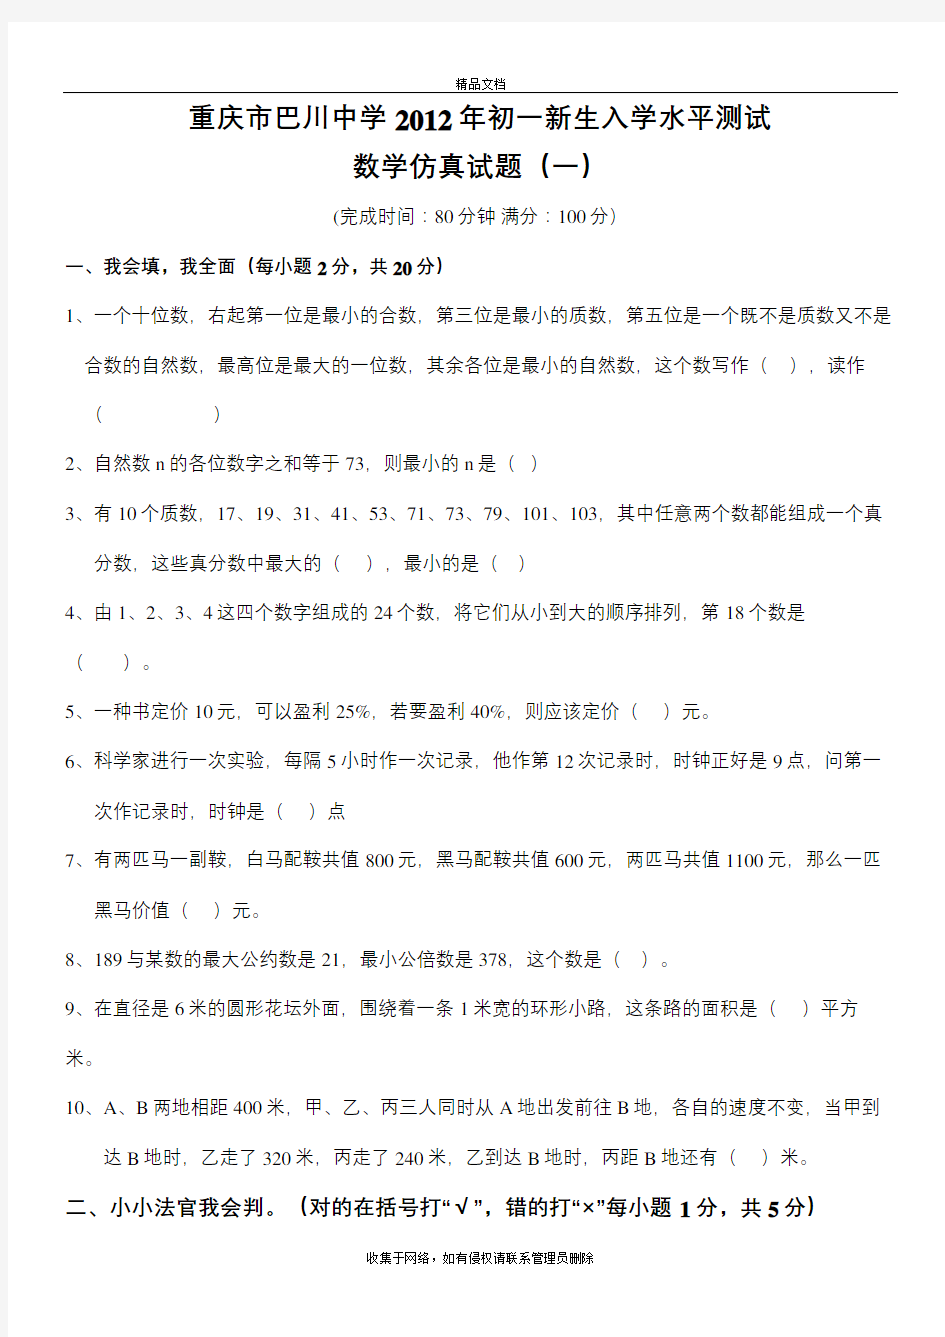 重庆市巴川中学初一新生数学入学水平测试教学教材